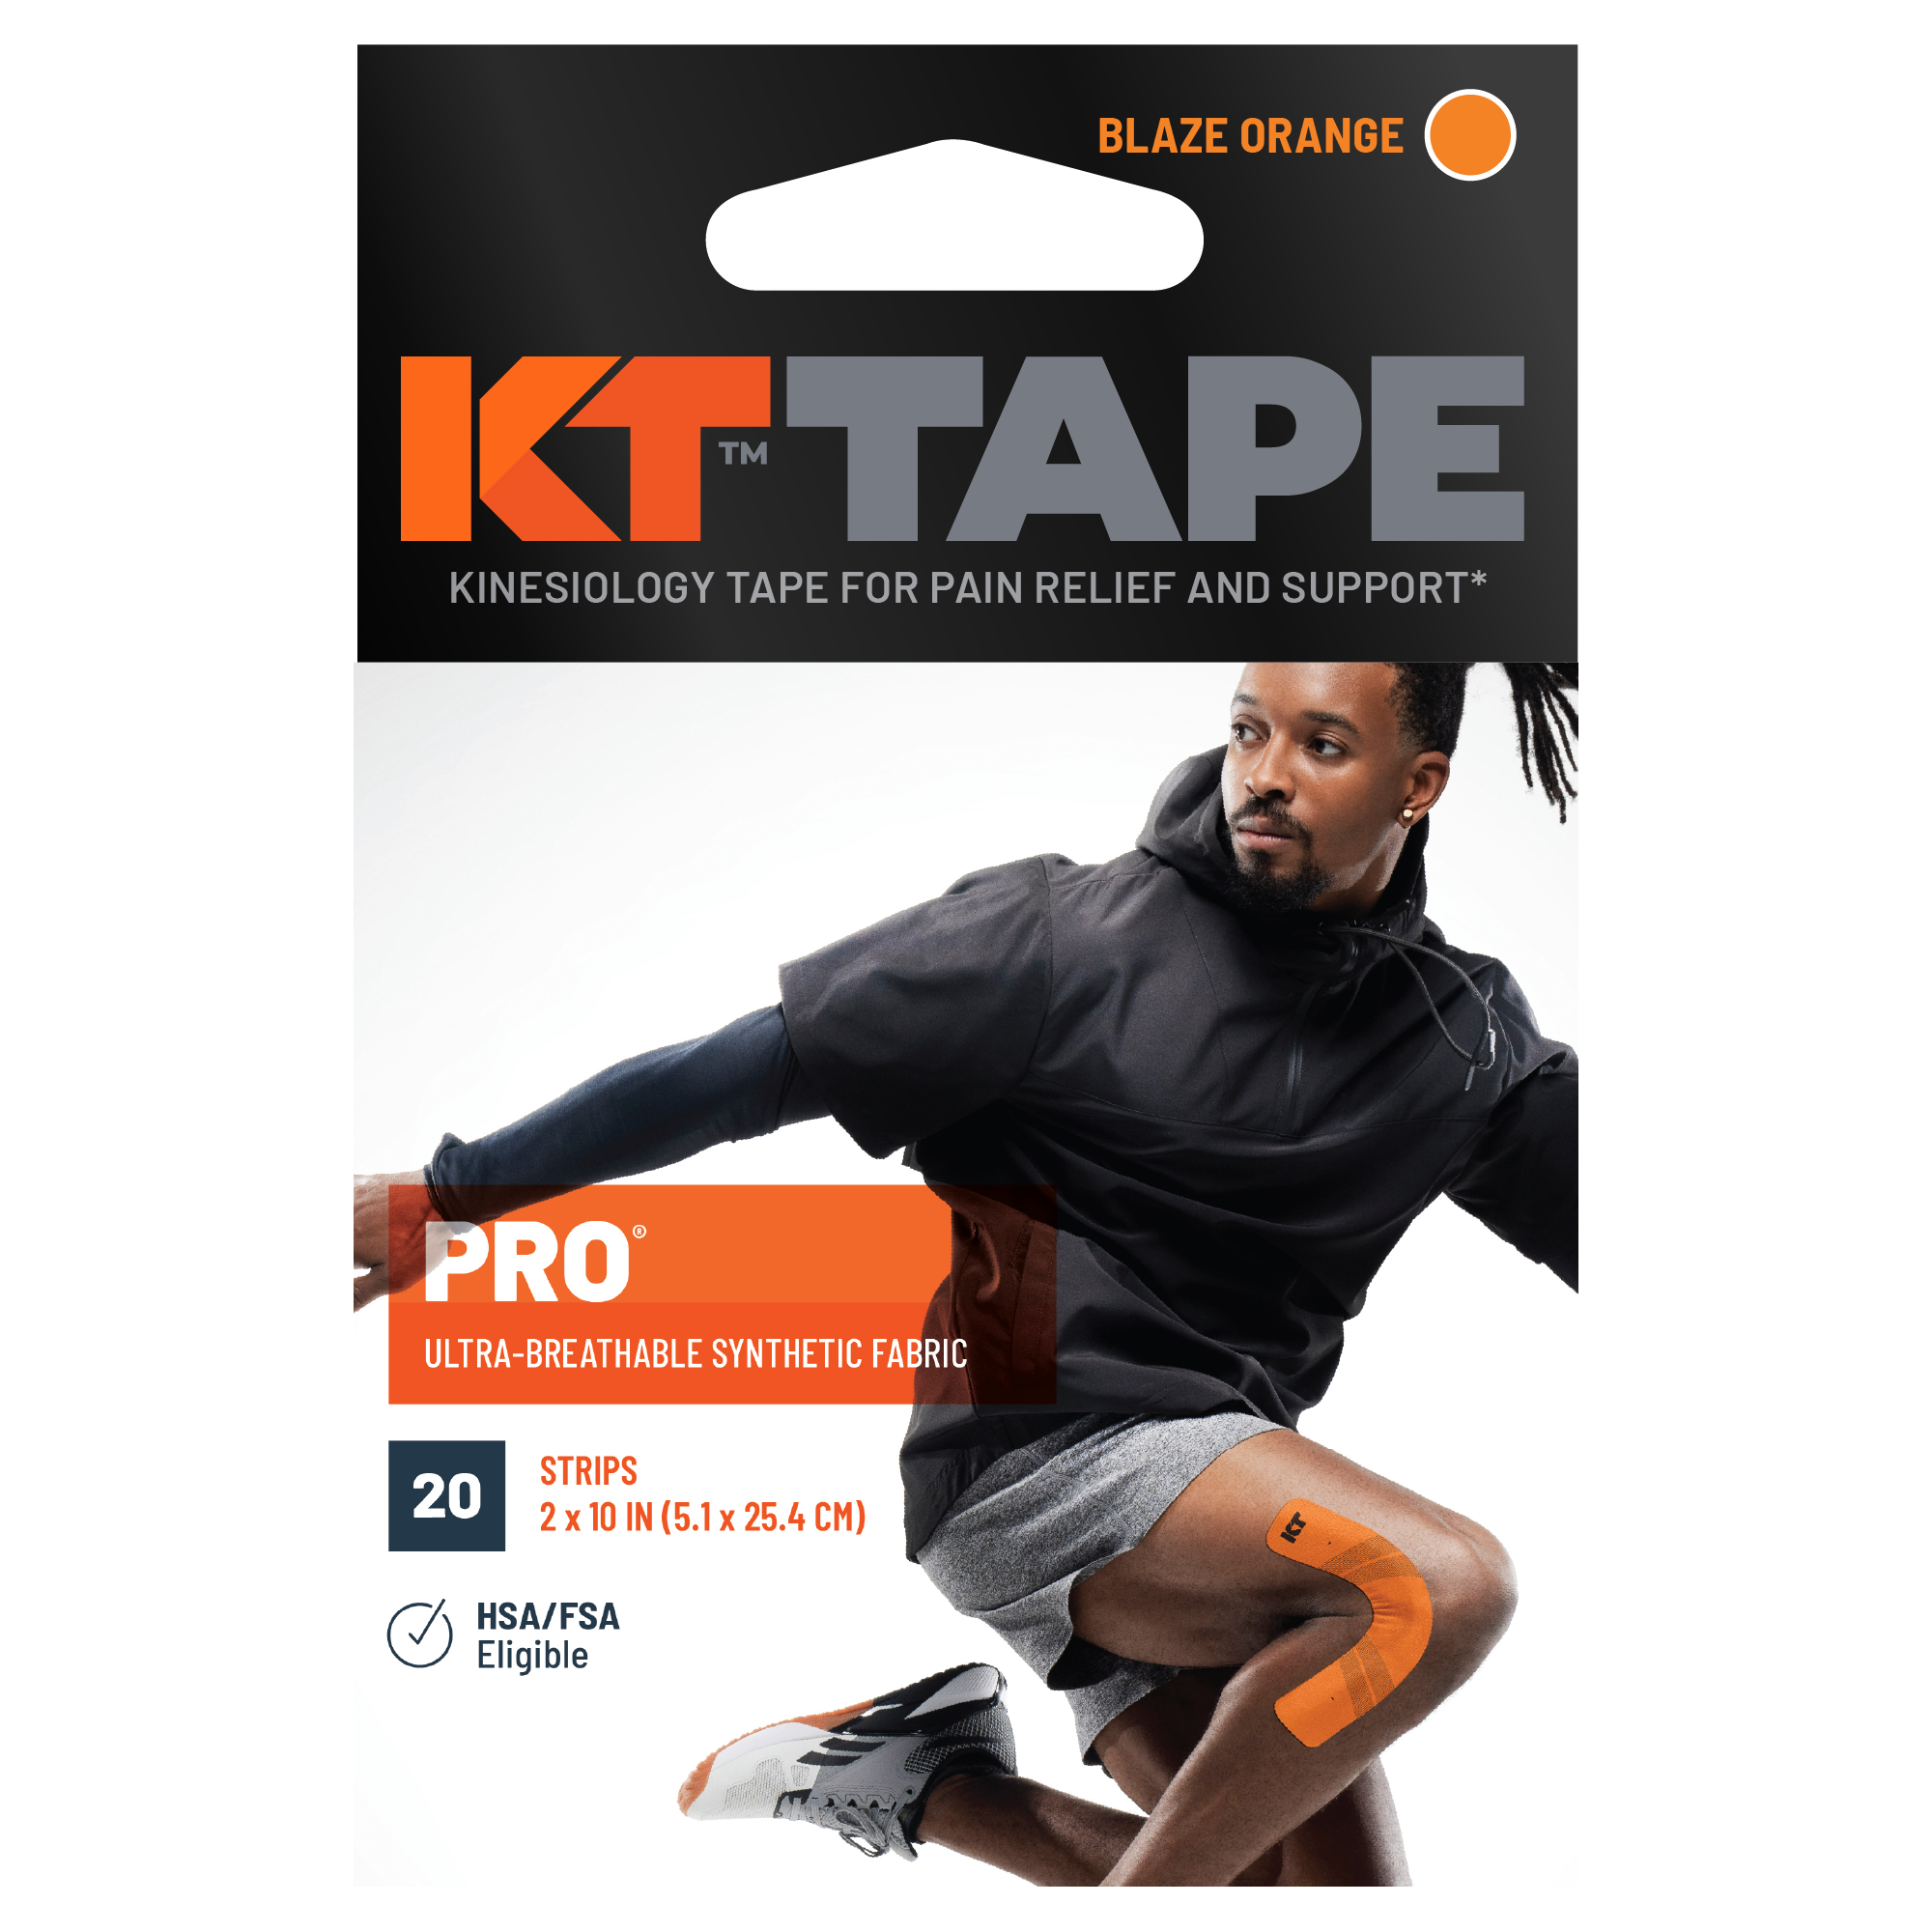 KT Tape Pro packaging#color_blaze-orange